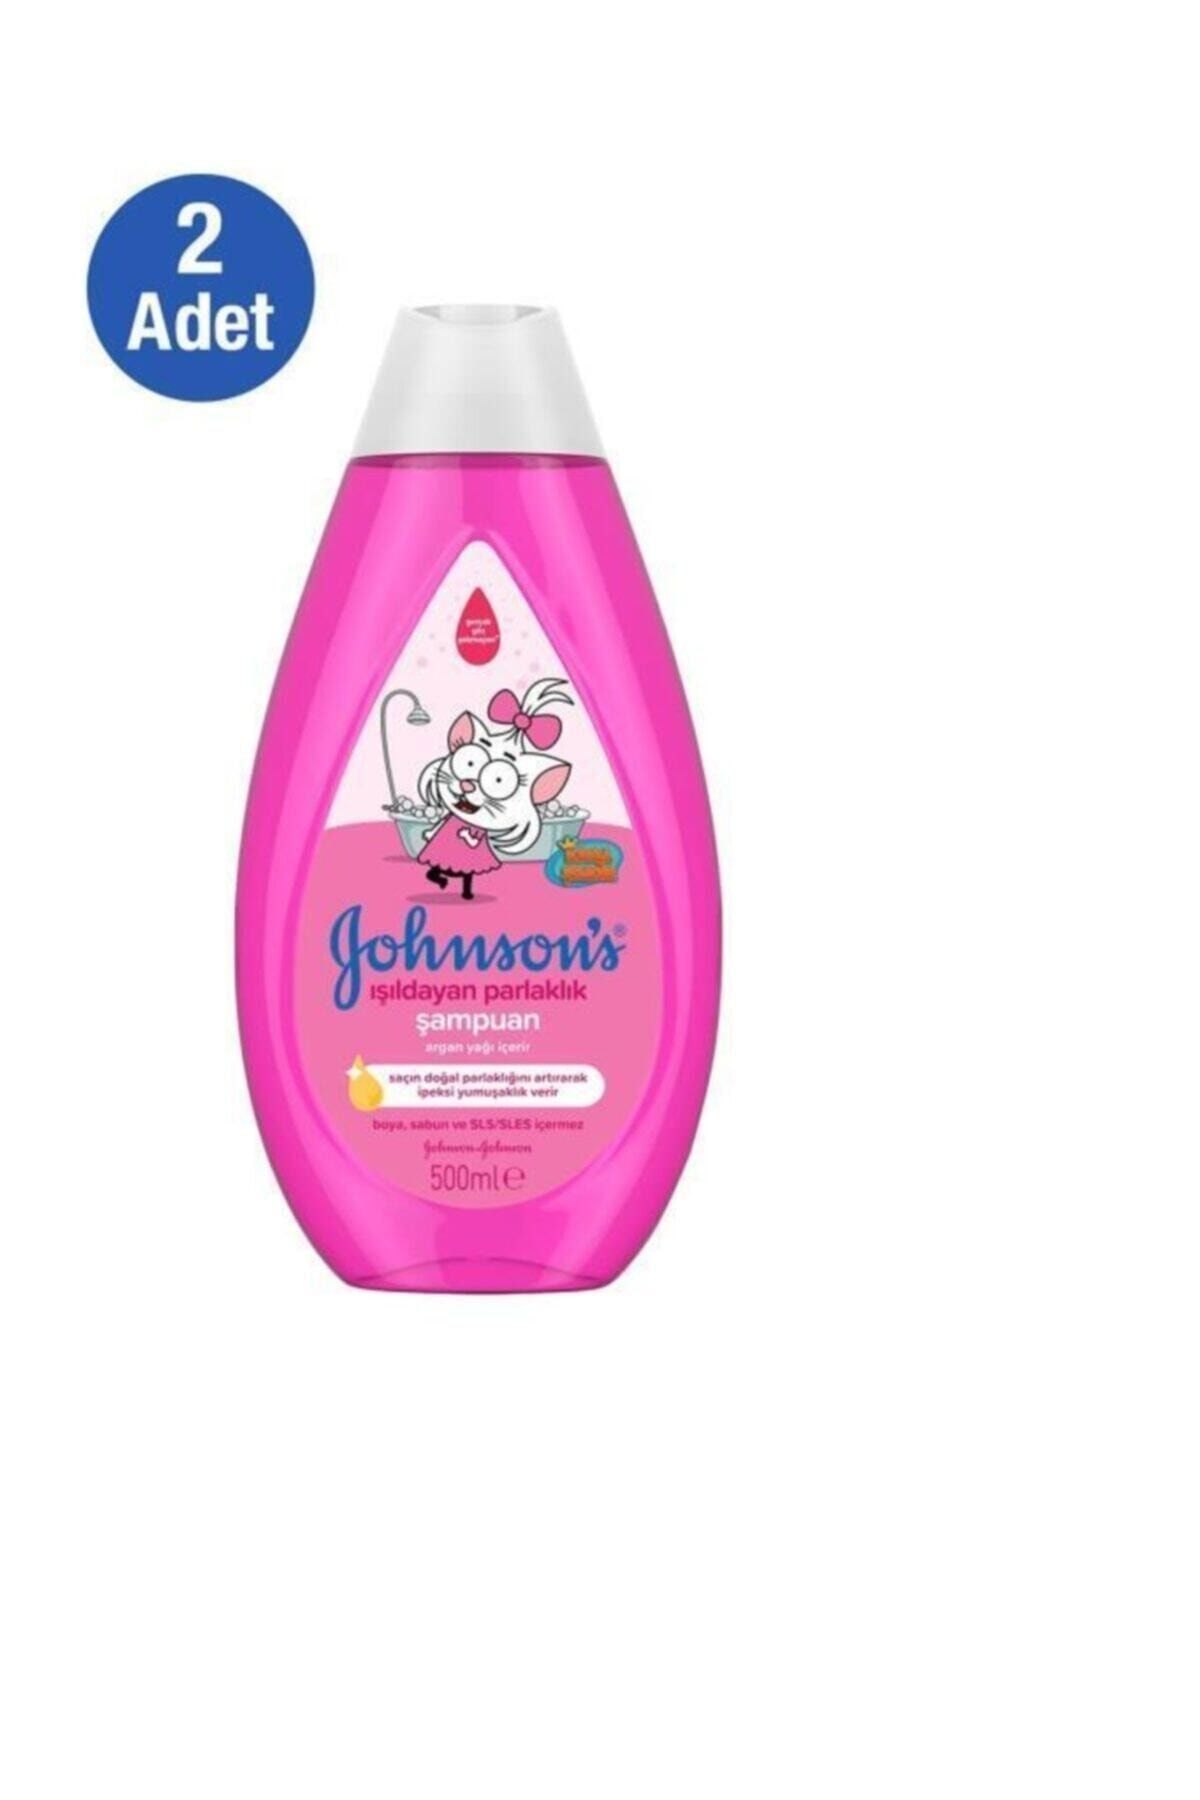 Johnson's Kral Şakir Işıldayan Parlaklık Bebek Şampuanı 500 ml X 2 Adet